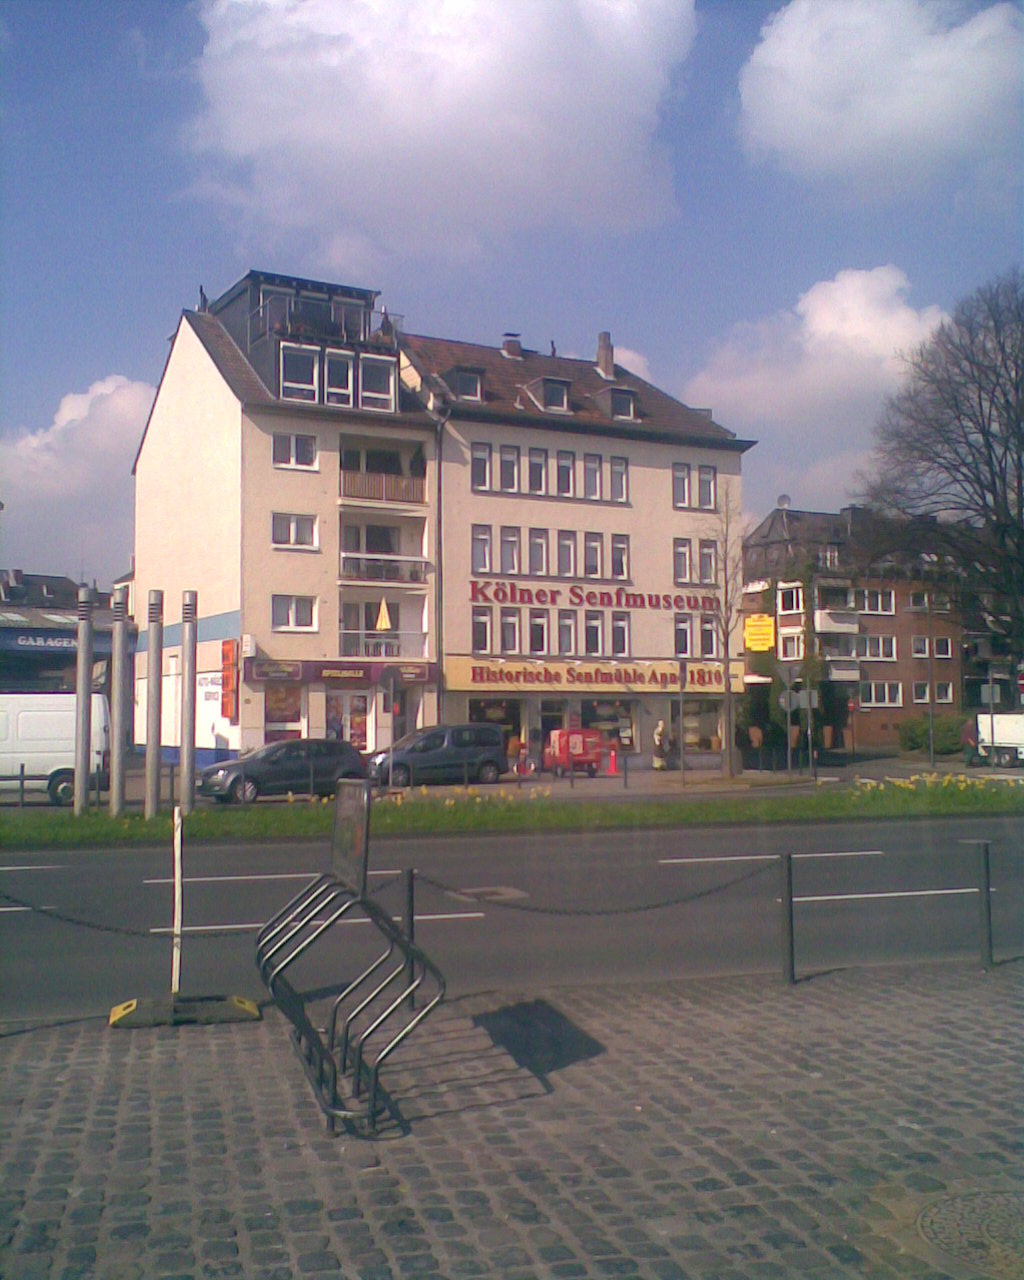 Bild 4 Historische Senfmühle in Köln